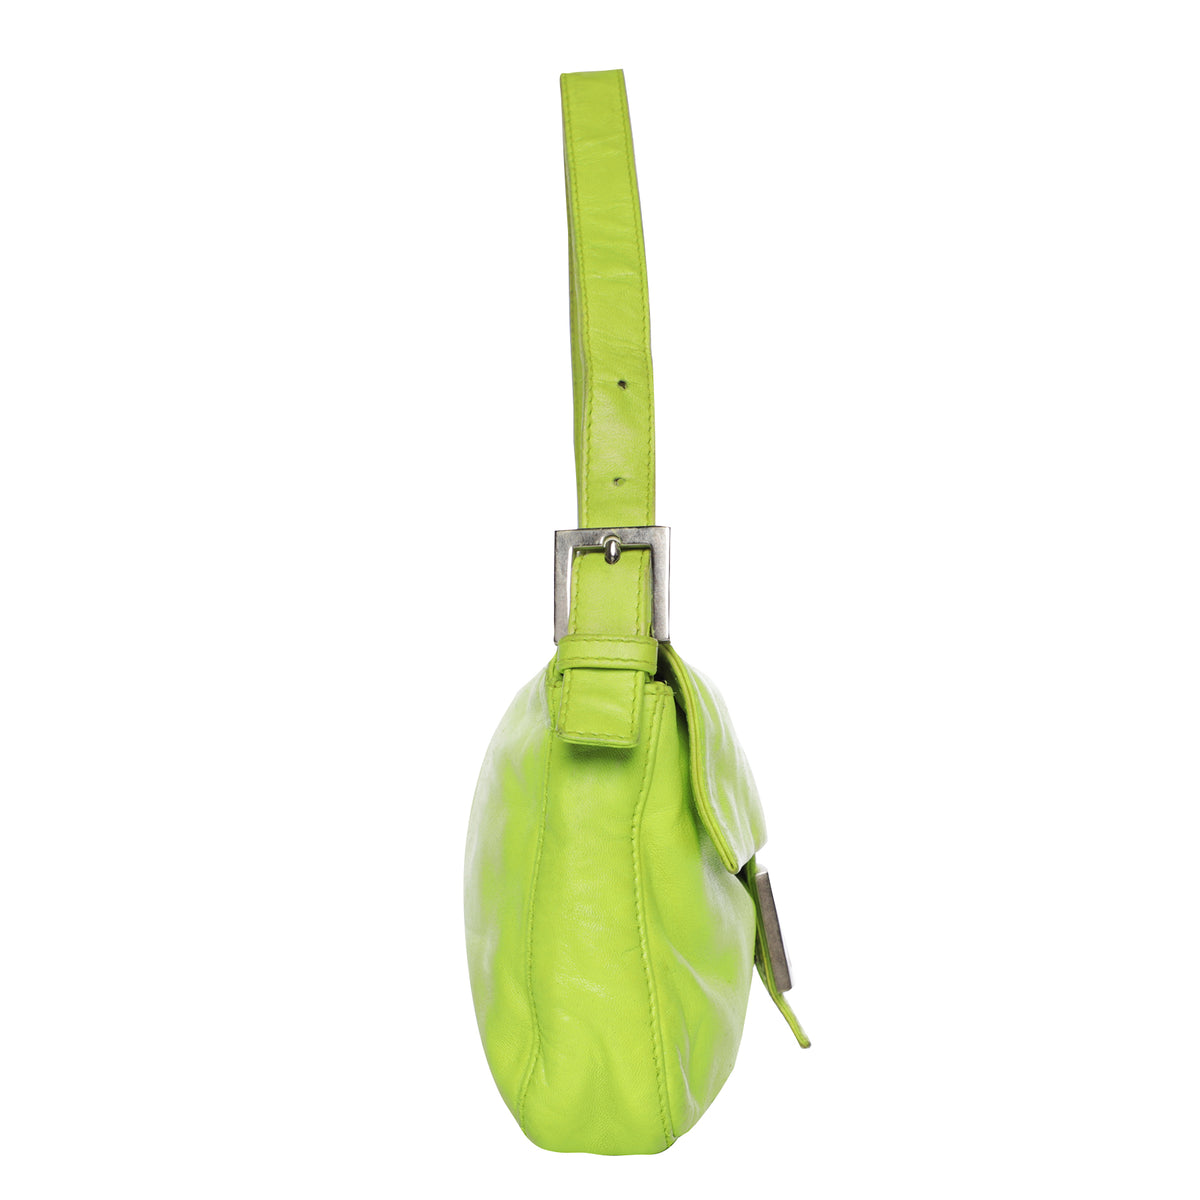 Vintage Fendi Lime Green Leather Shoulder Bag